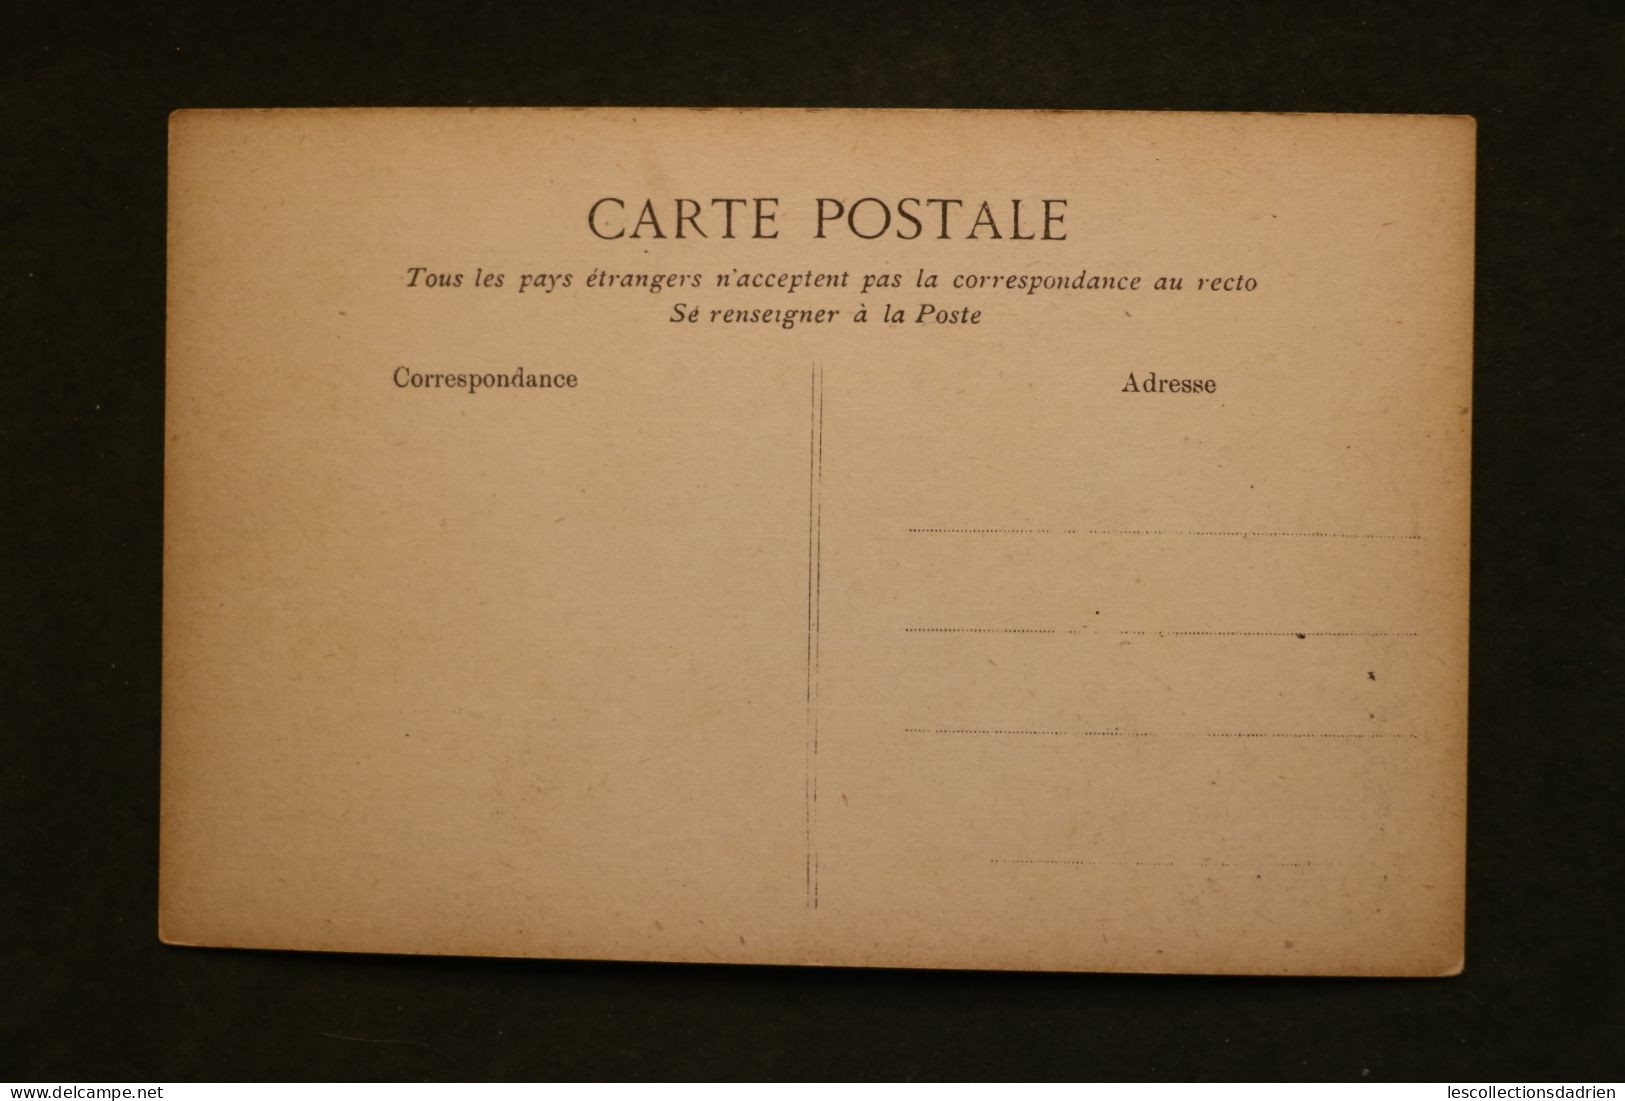 Carte postale ancienne - Versailles hameau du Petit Trianon le Moulin